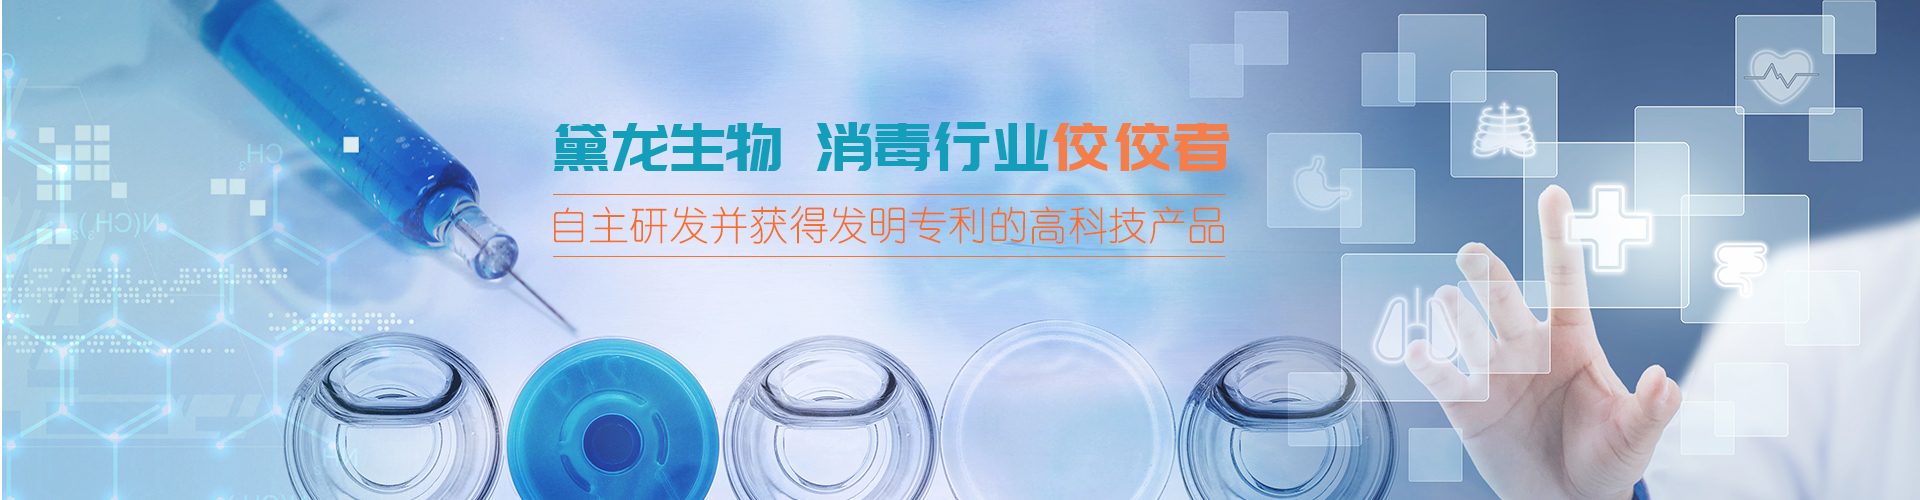 上海黛龙生物工程科技有限公司